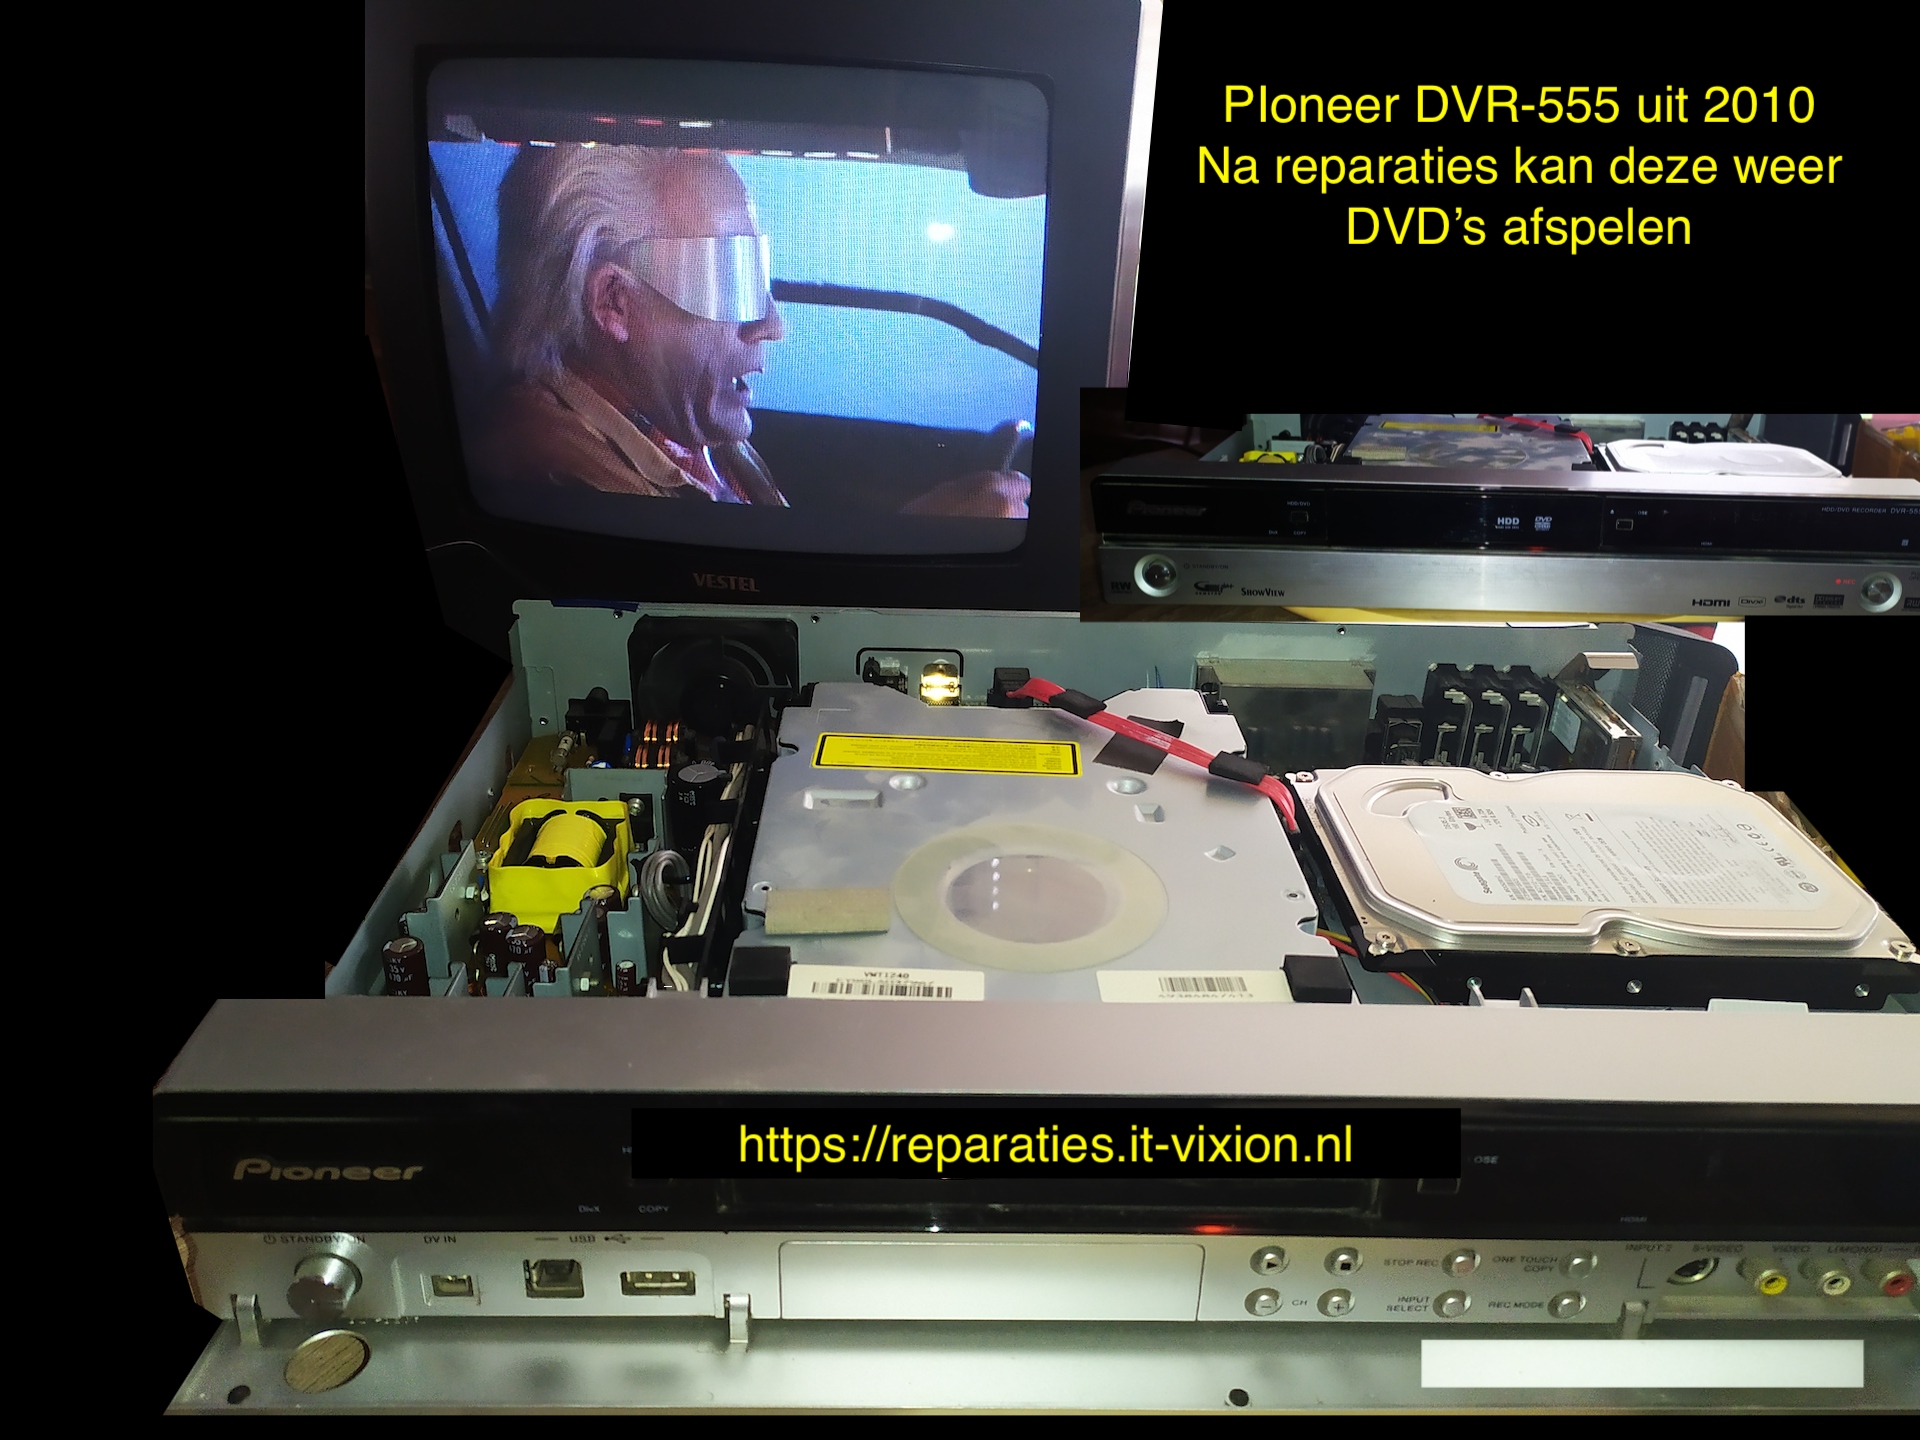 Pioneer DVR 555 uit 2010